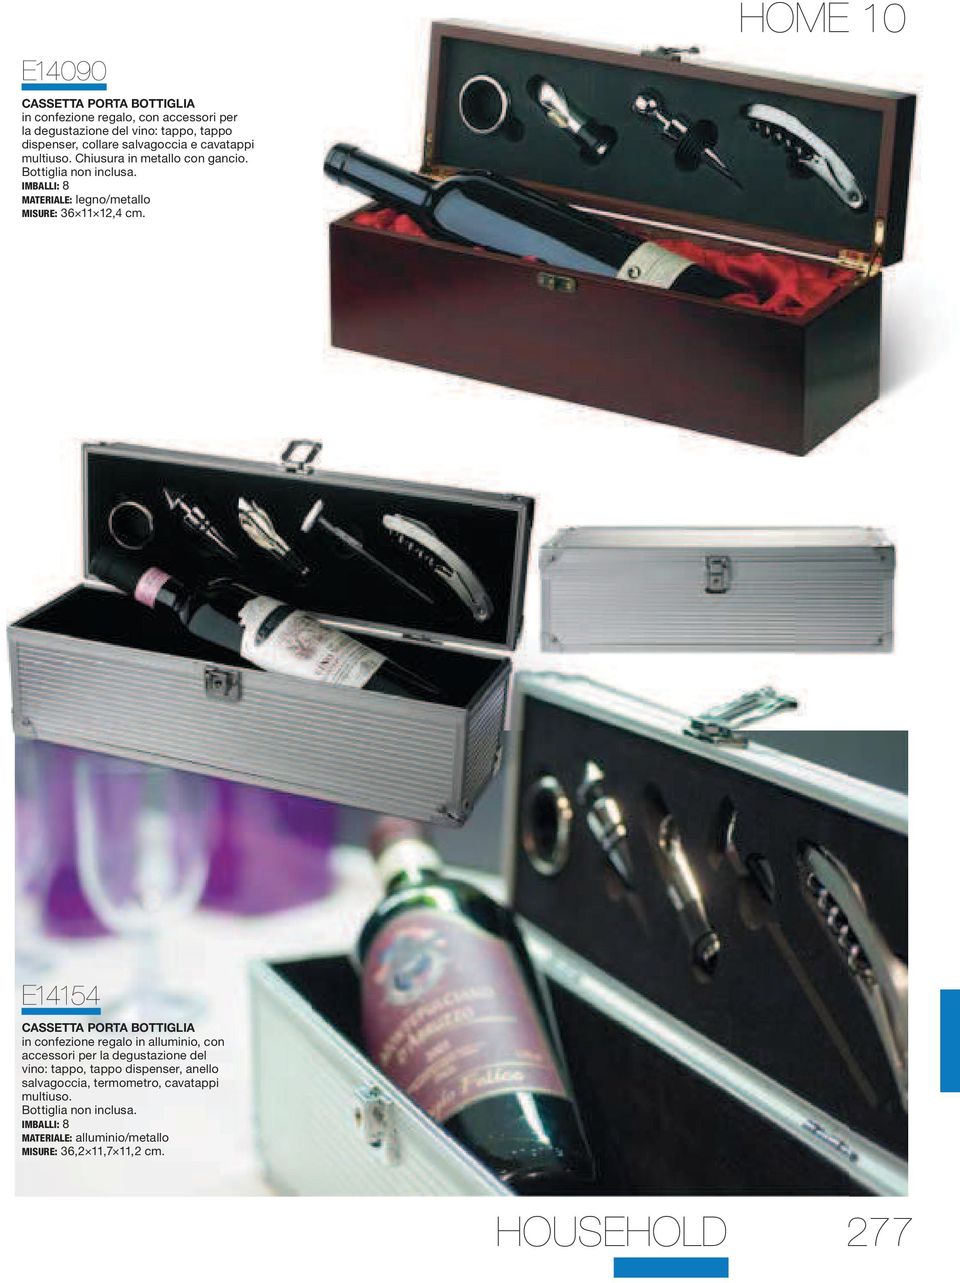 HOME 10 E14154 CASSETTA PORTA BOTTIGLIA in confezione regalo in alluminio, con accessori per la degustazione del vino: tappo, tappo dispenser,